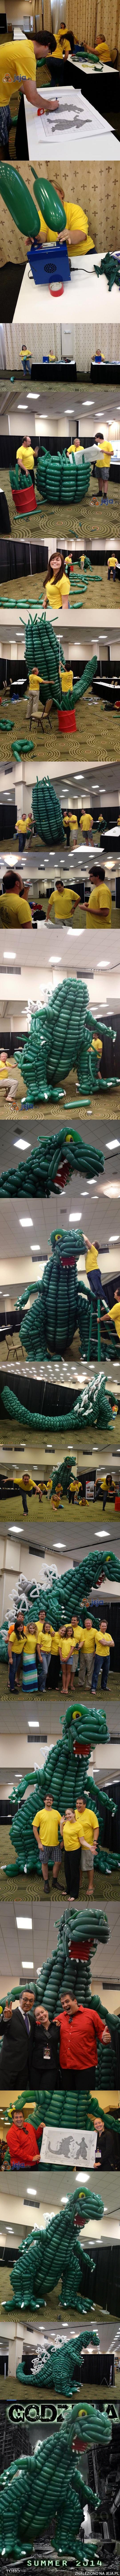 Godzilla stworzona z 2500 balonów